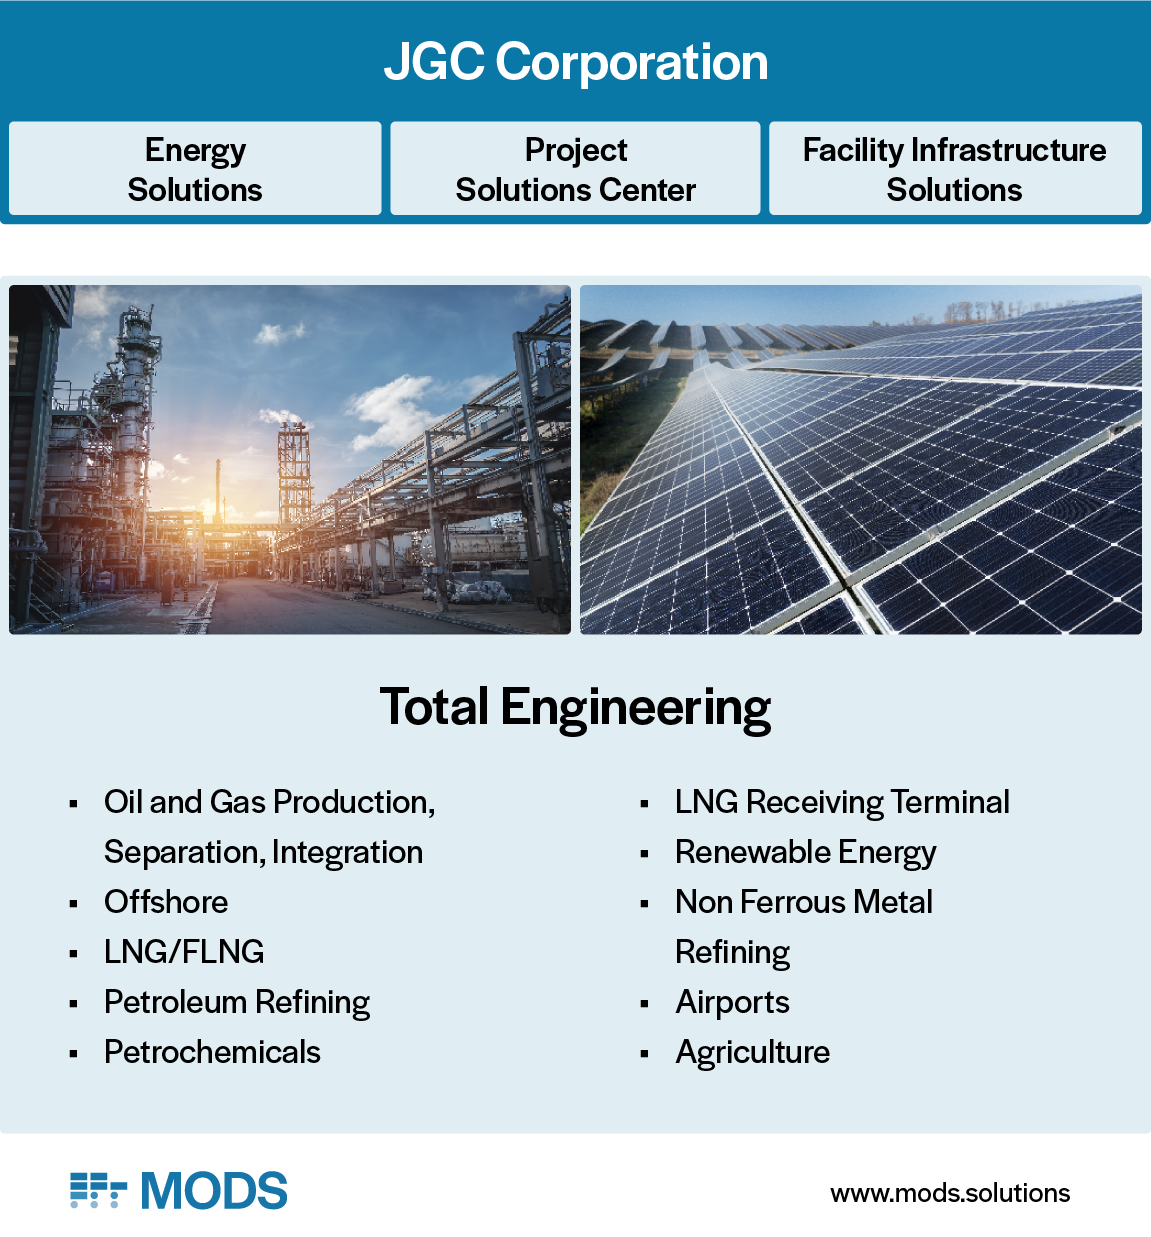 jgc-corporation-devisions